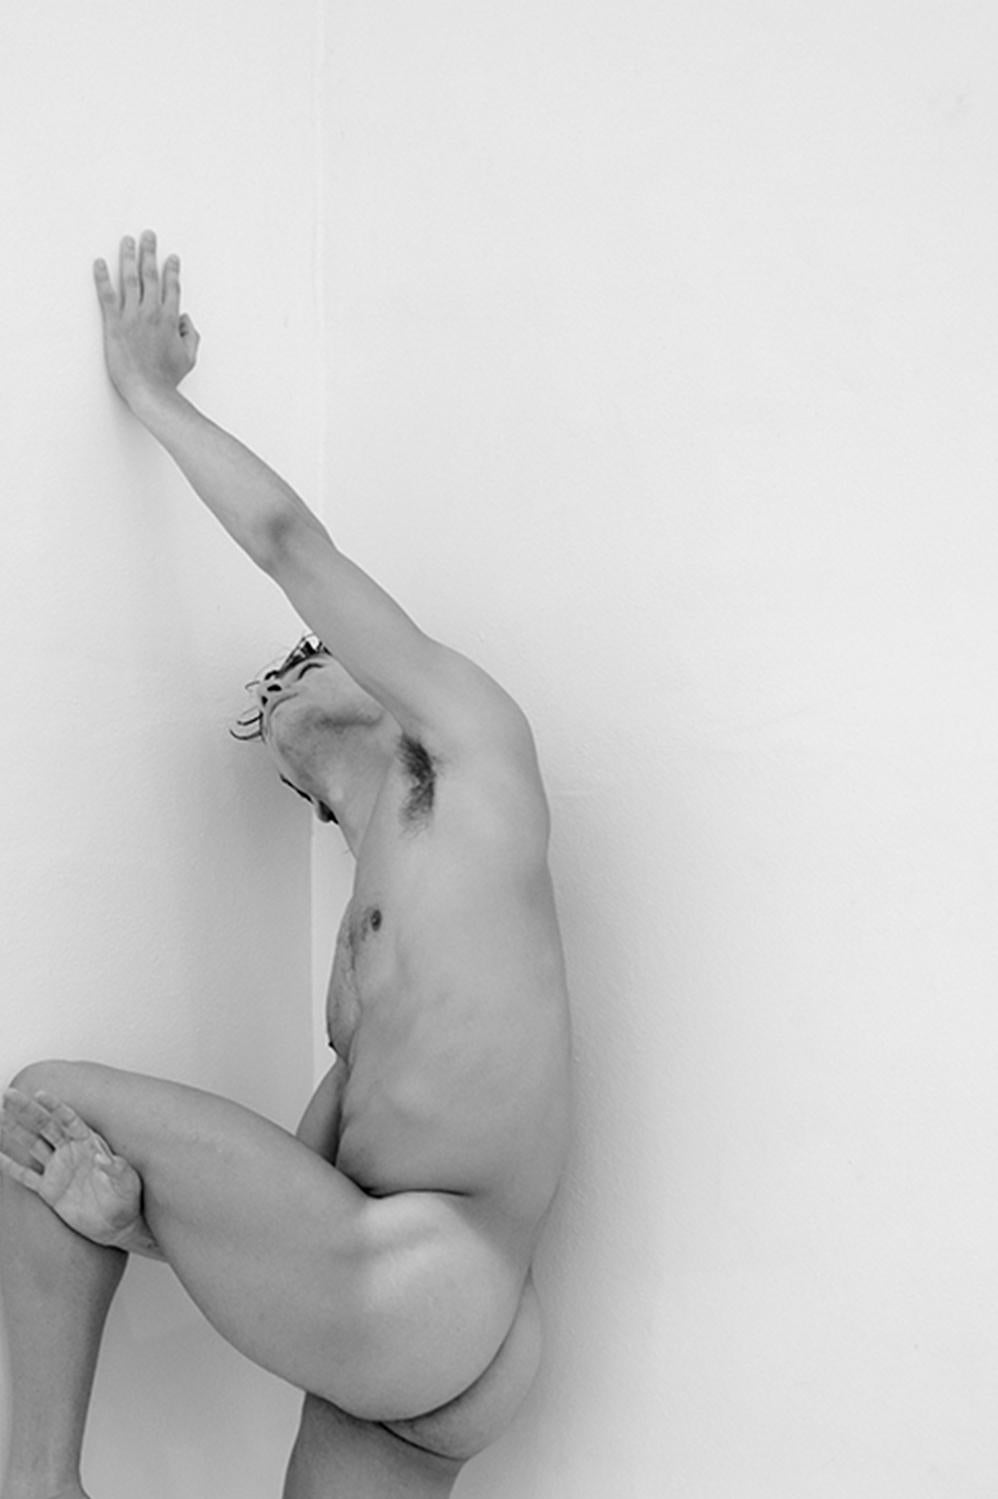 Mann an der Wand, zweier-Set. Motion Series. Männlicher Akt. Schwarz-Weiß-Fotografie (Zeitgenössisch), Photograph, von Ricky Cohete